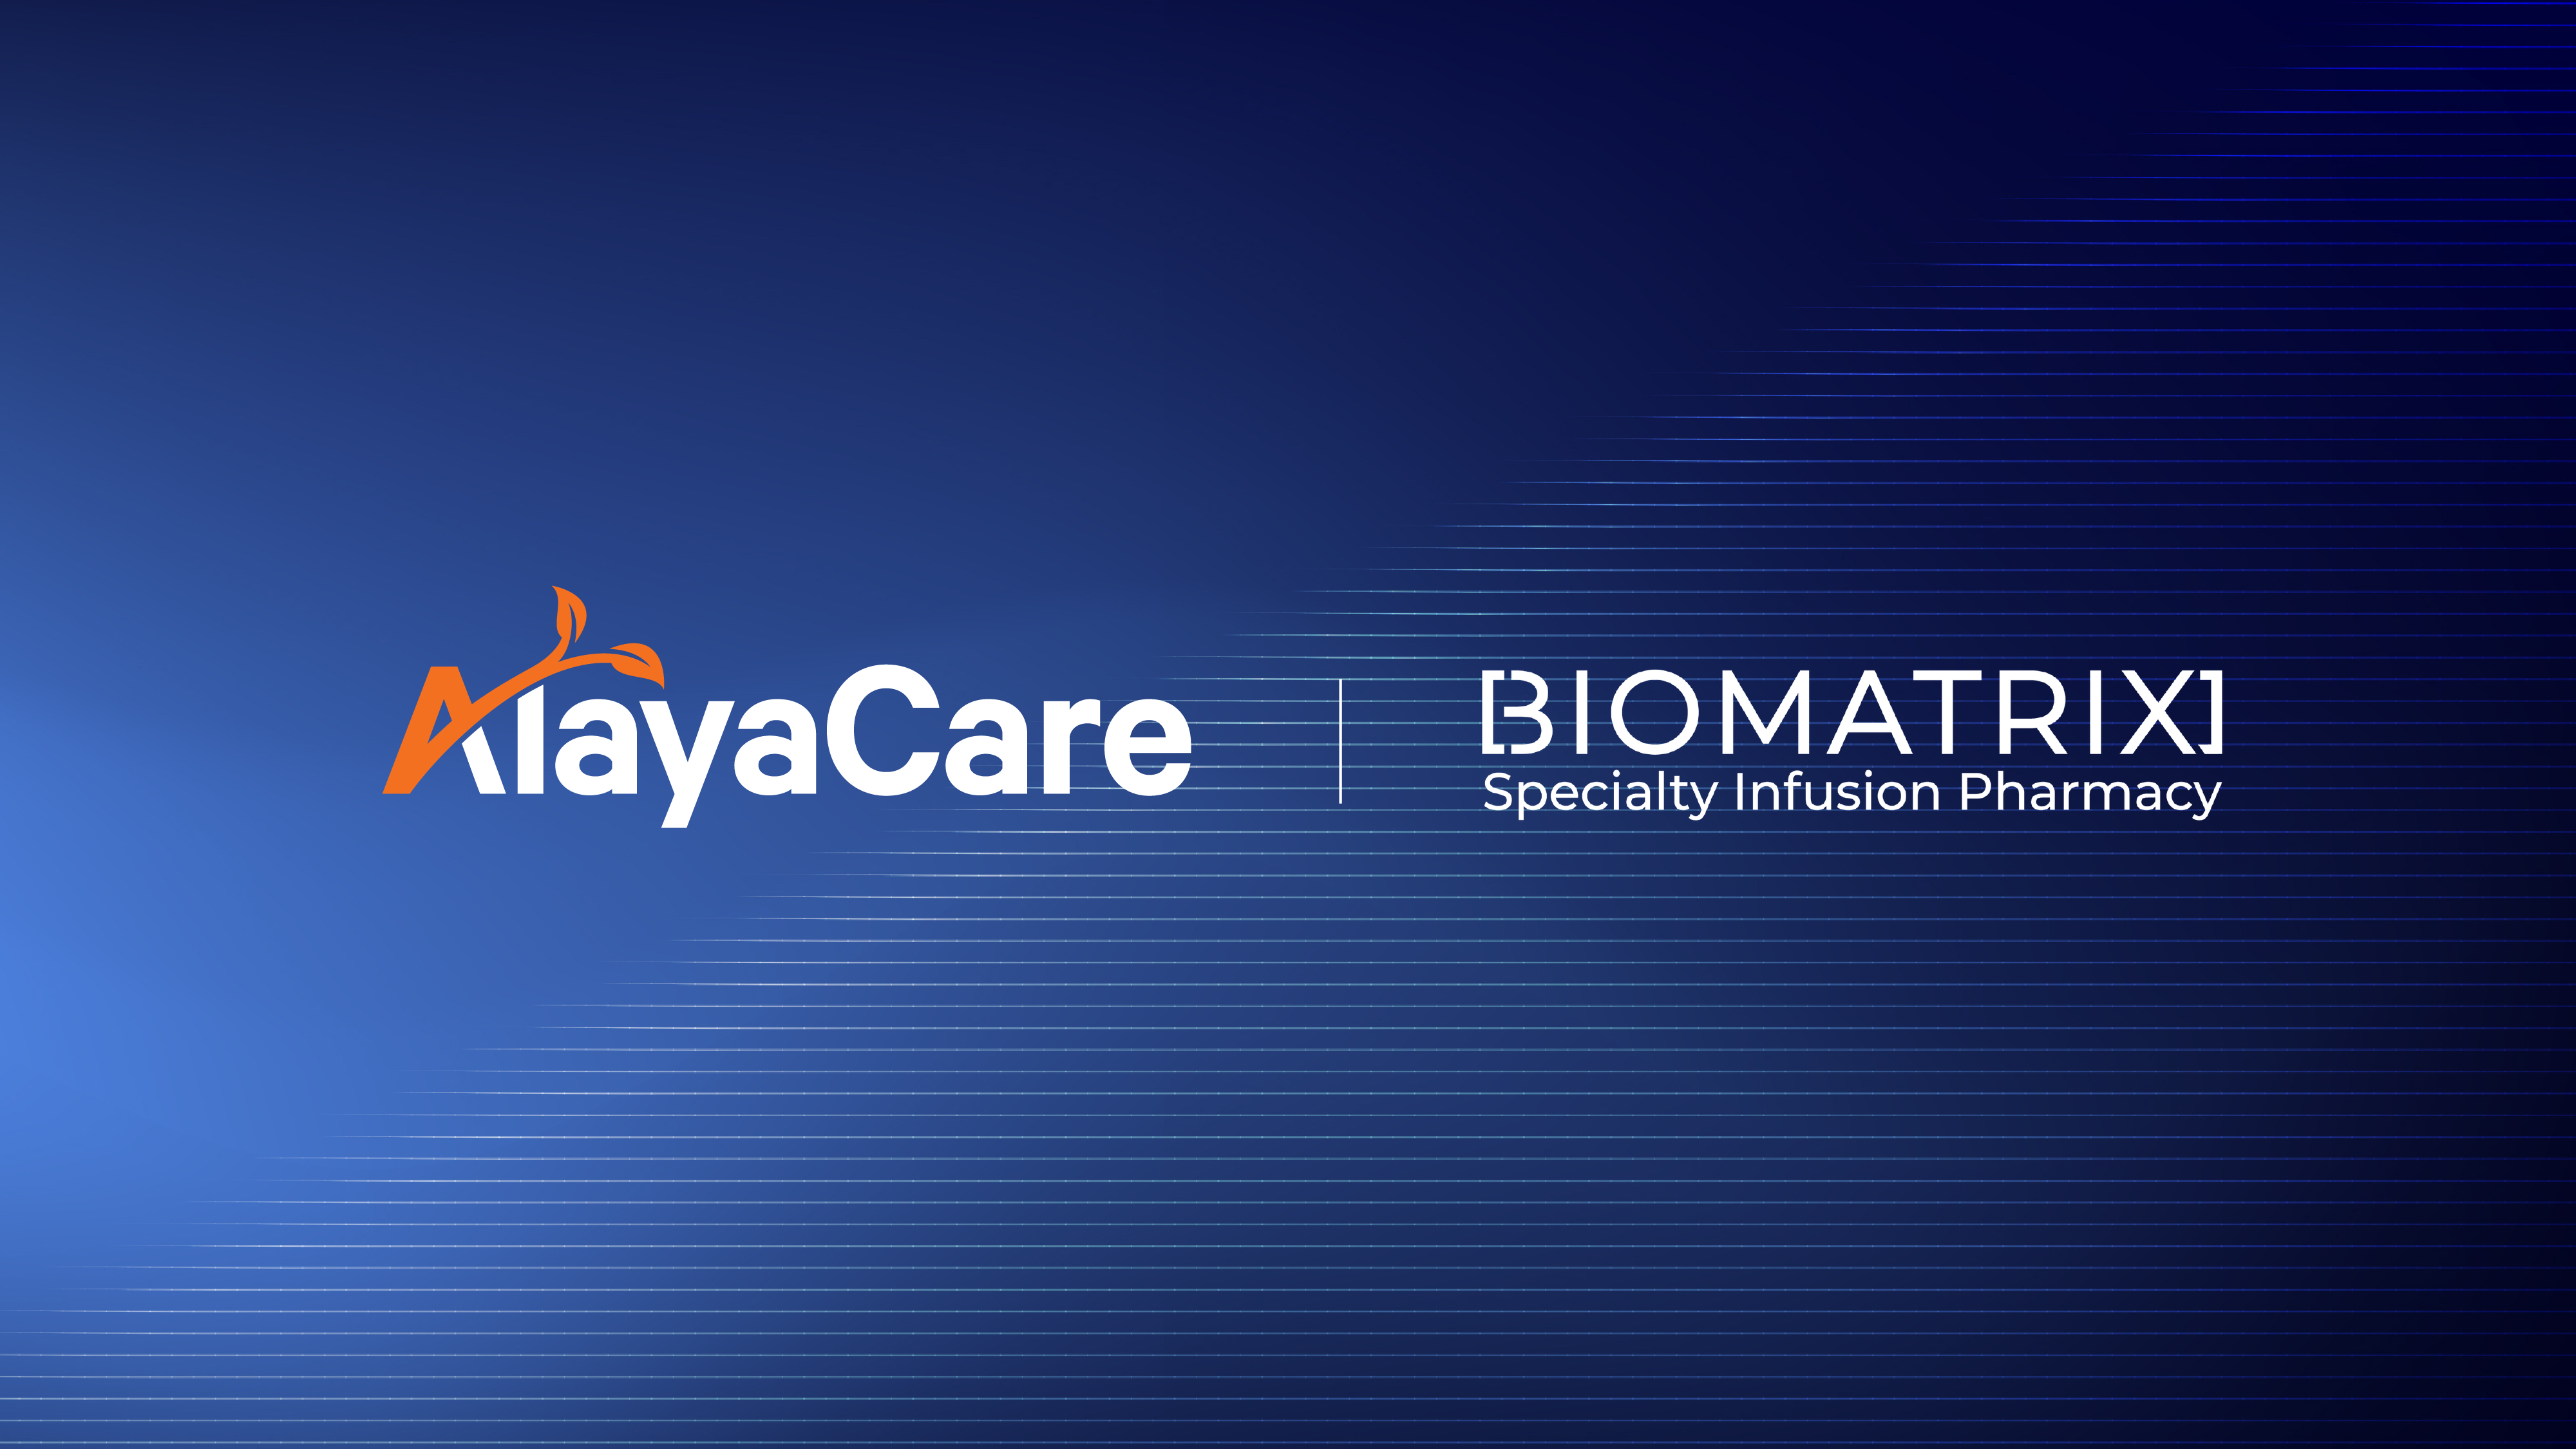 AlayaCare and BioMatrix logos on blue background